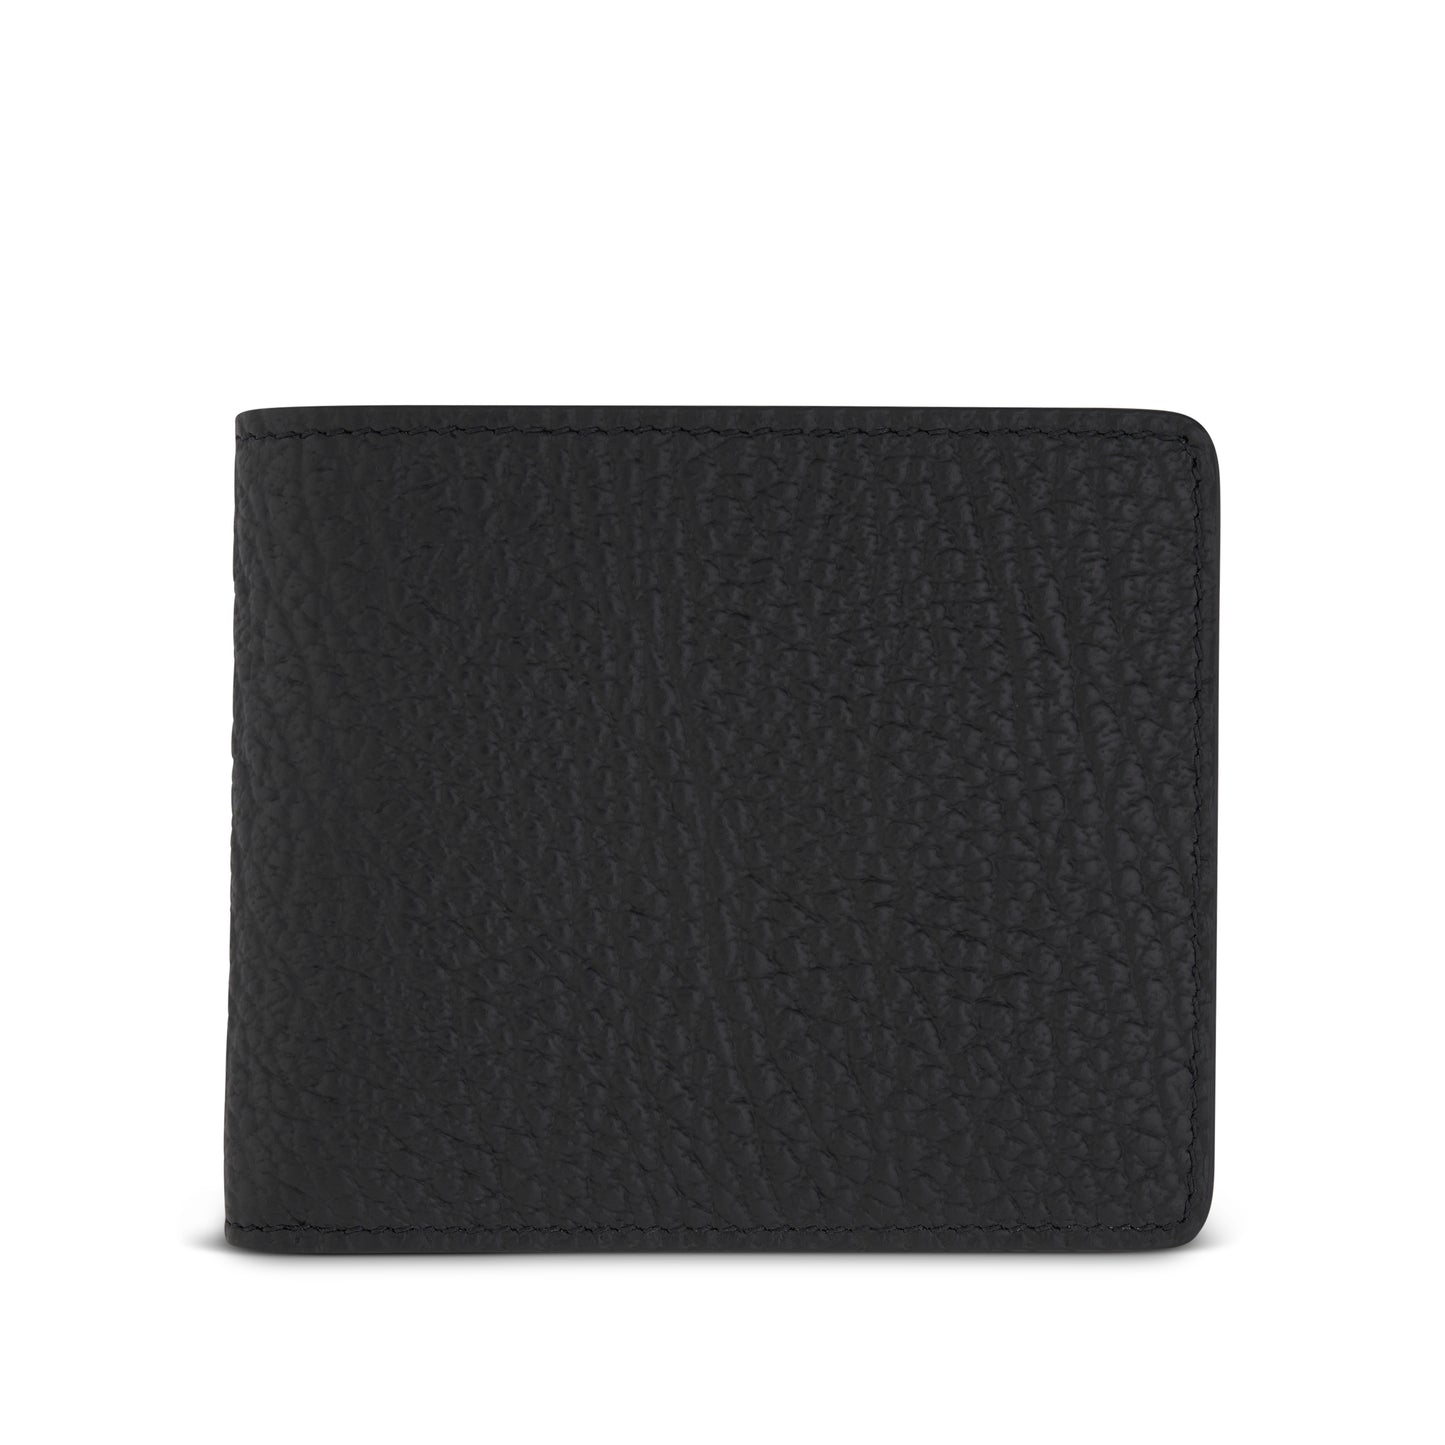 4 Stitch Bifold Wallet in Black